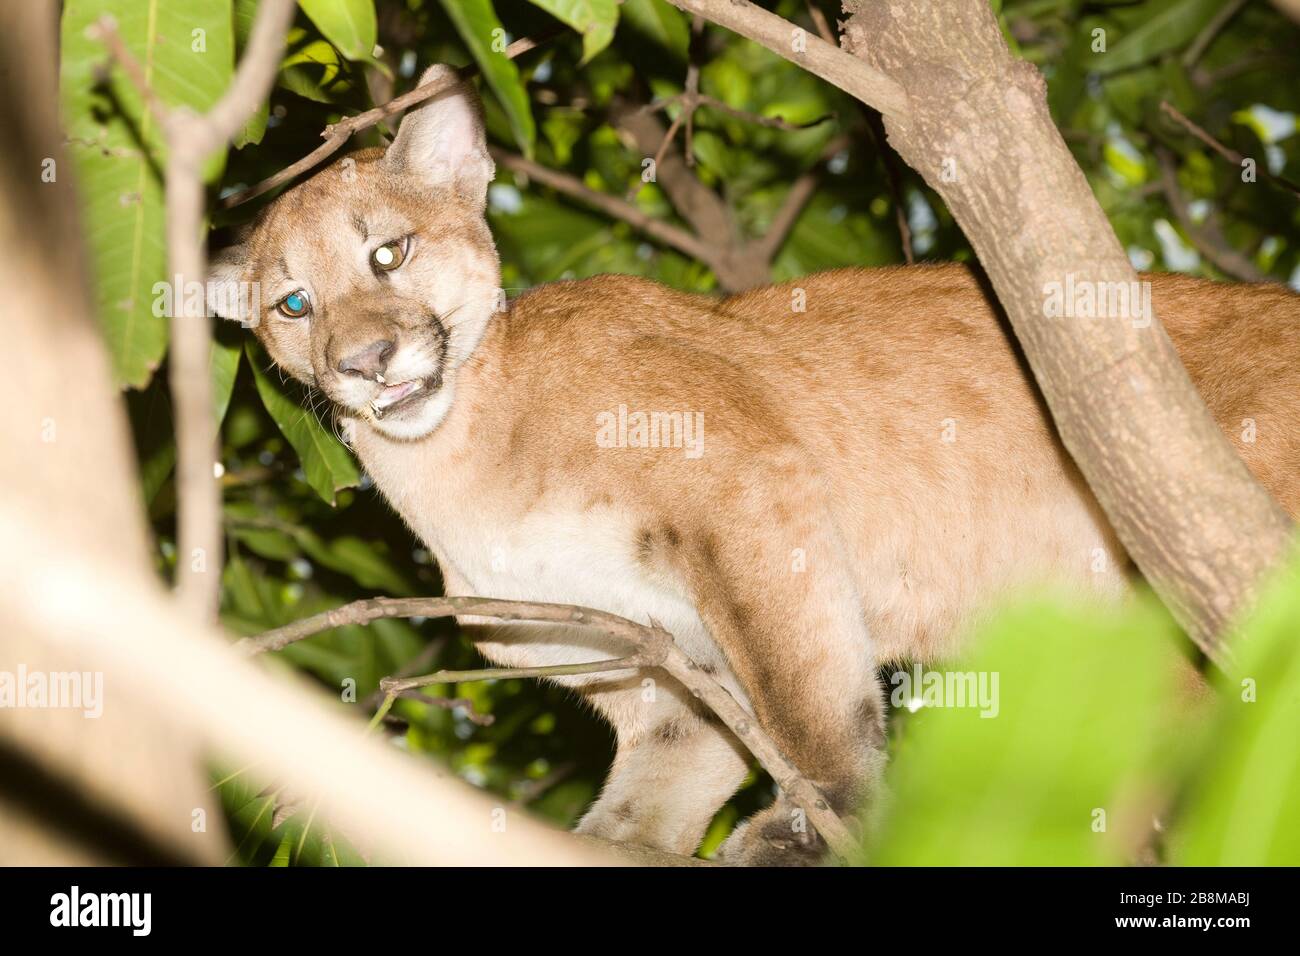 Onça-parda, Puma (Puma concolor) Burrowed, Aquidauana, Mato Grosso do Sul, Brazil Stock Photo